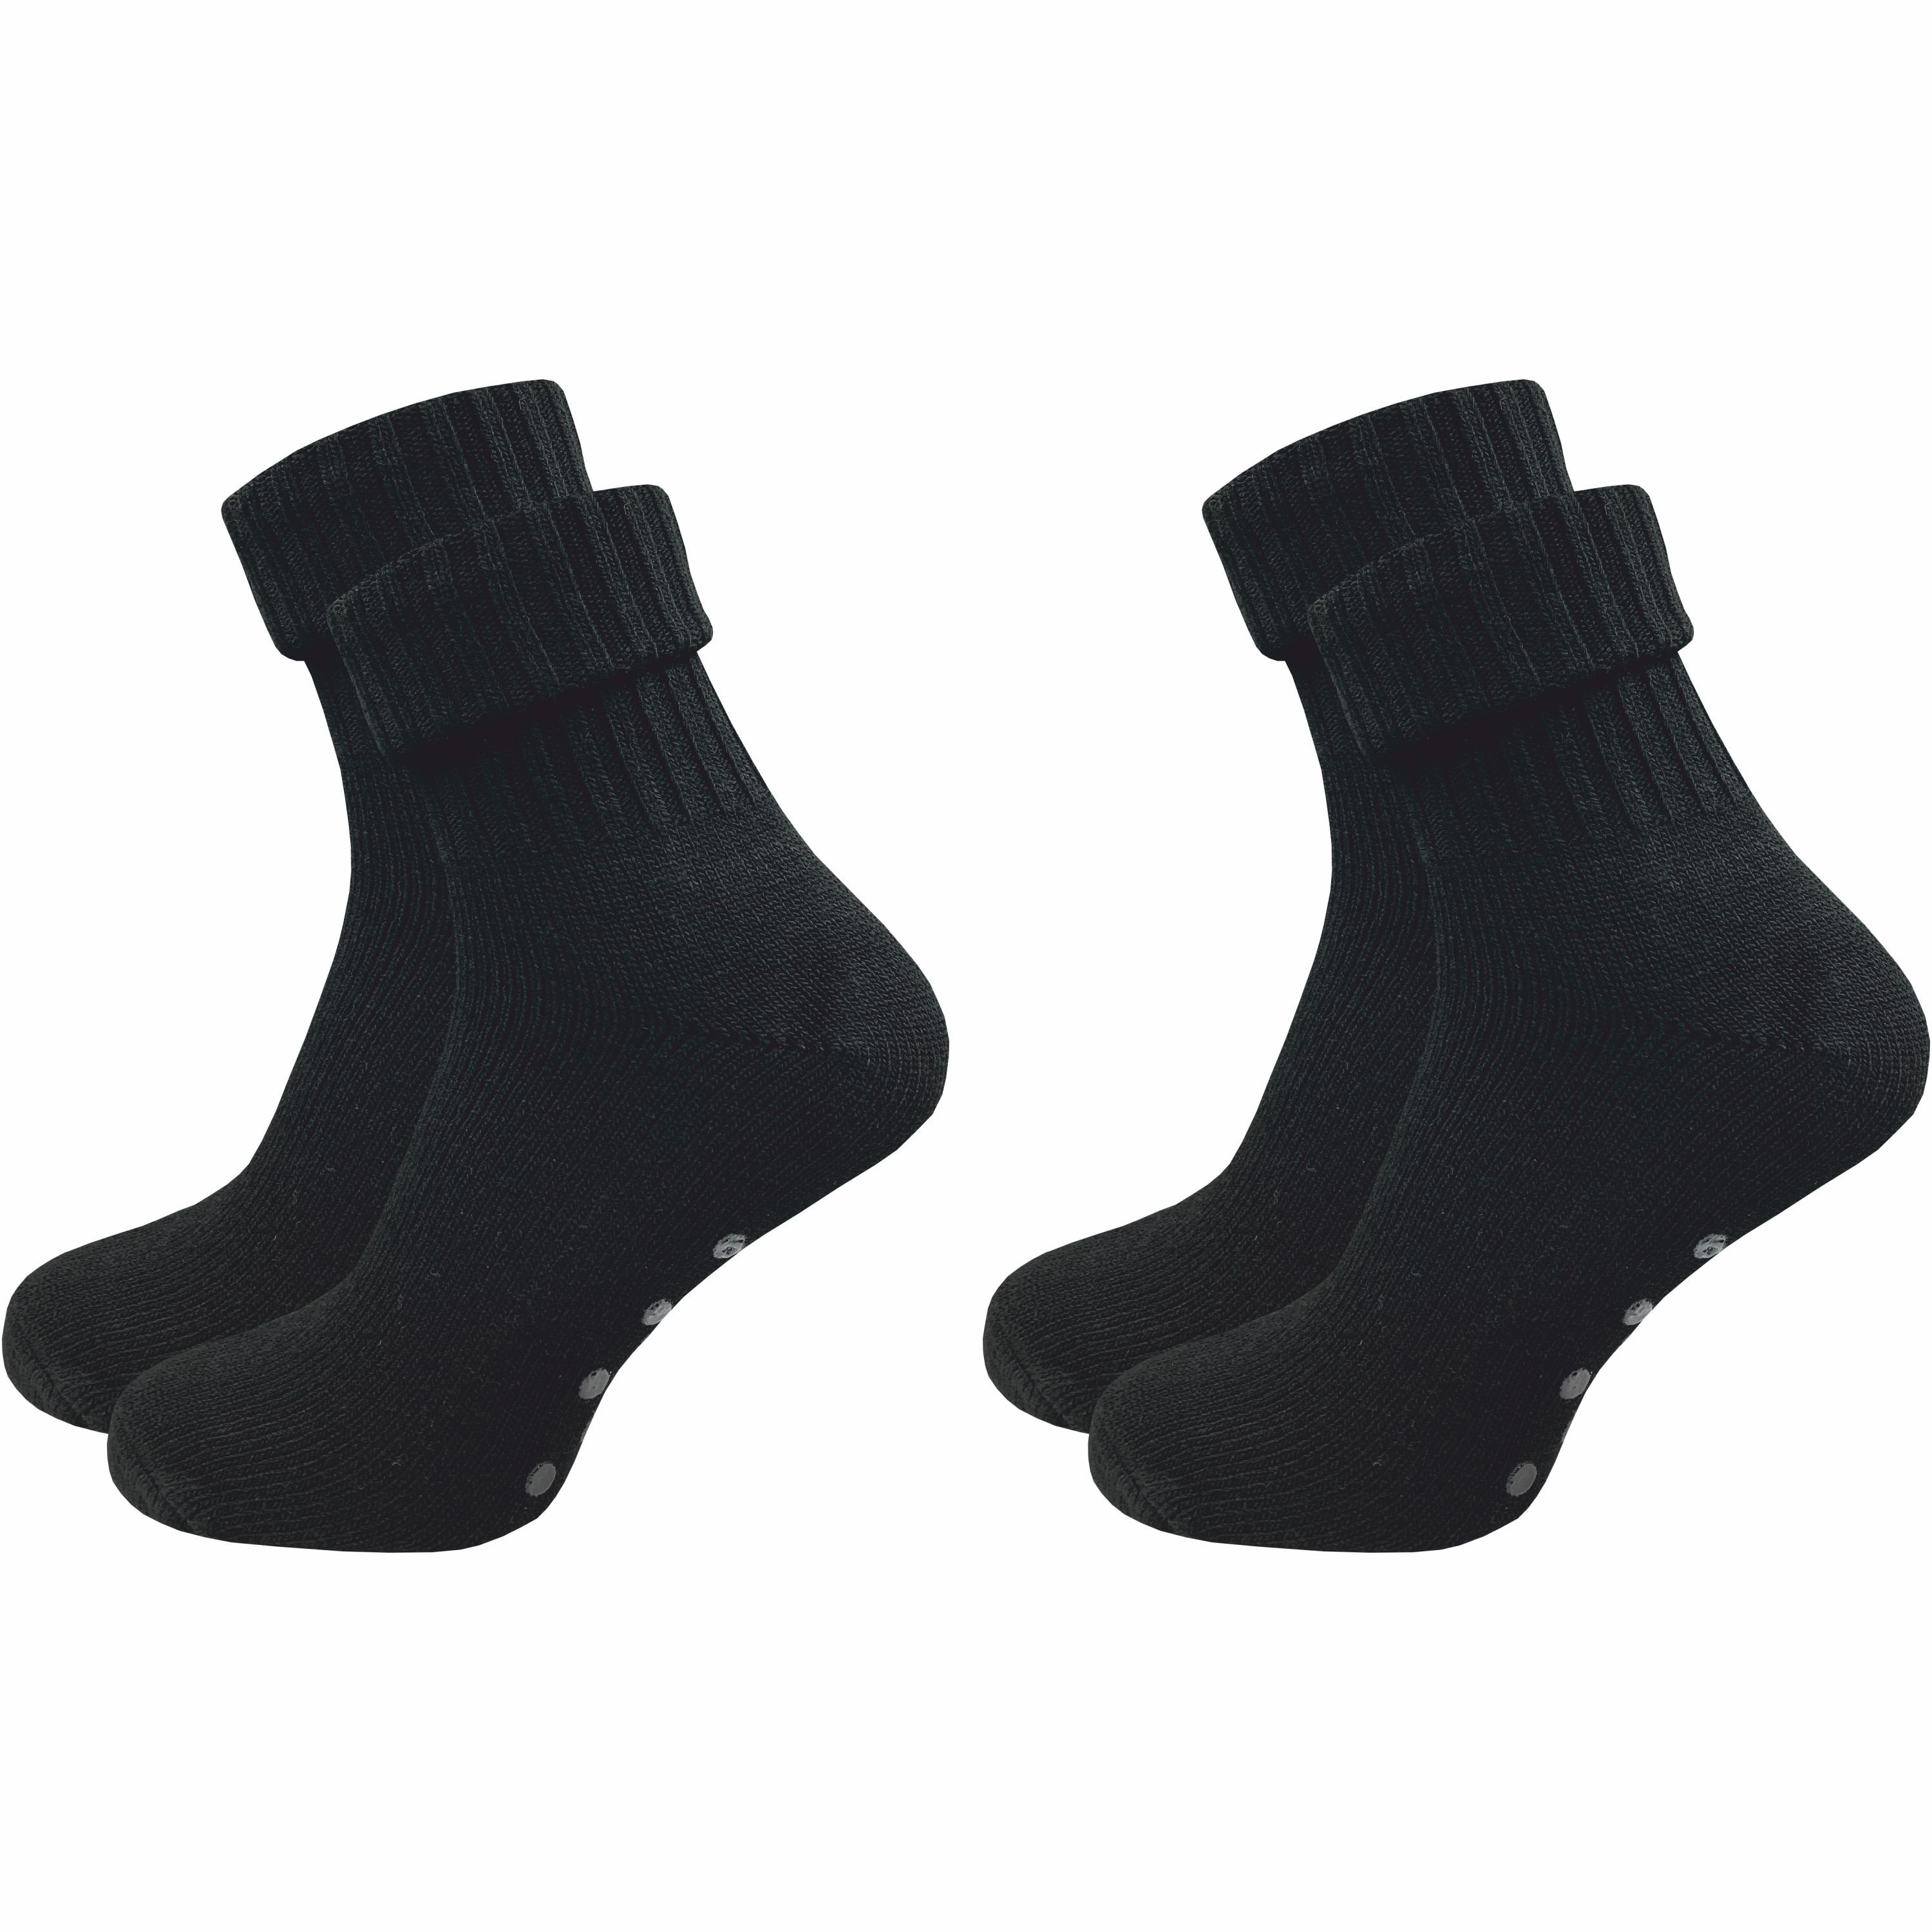 GAWILO ABS-Socken für Damen aus Wolle für extra warme Füße, Stoppersocken (2 Paar) Rutschfeste Hausschuhsocken, Weiche & kuschlige Socken mit Noppen schwarz